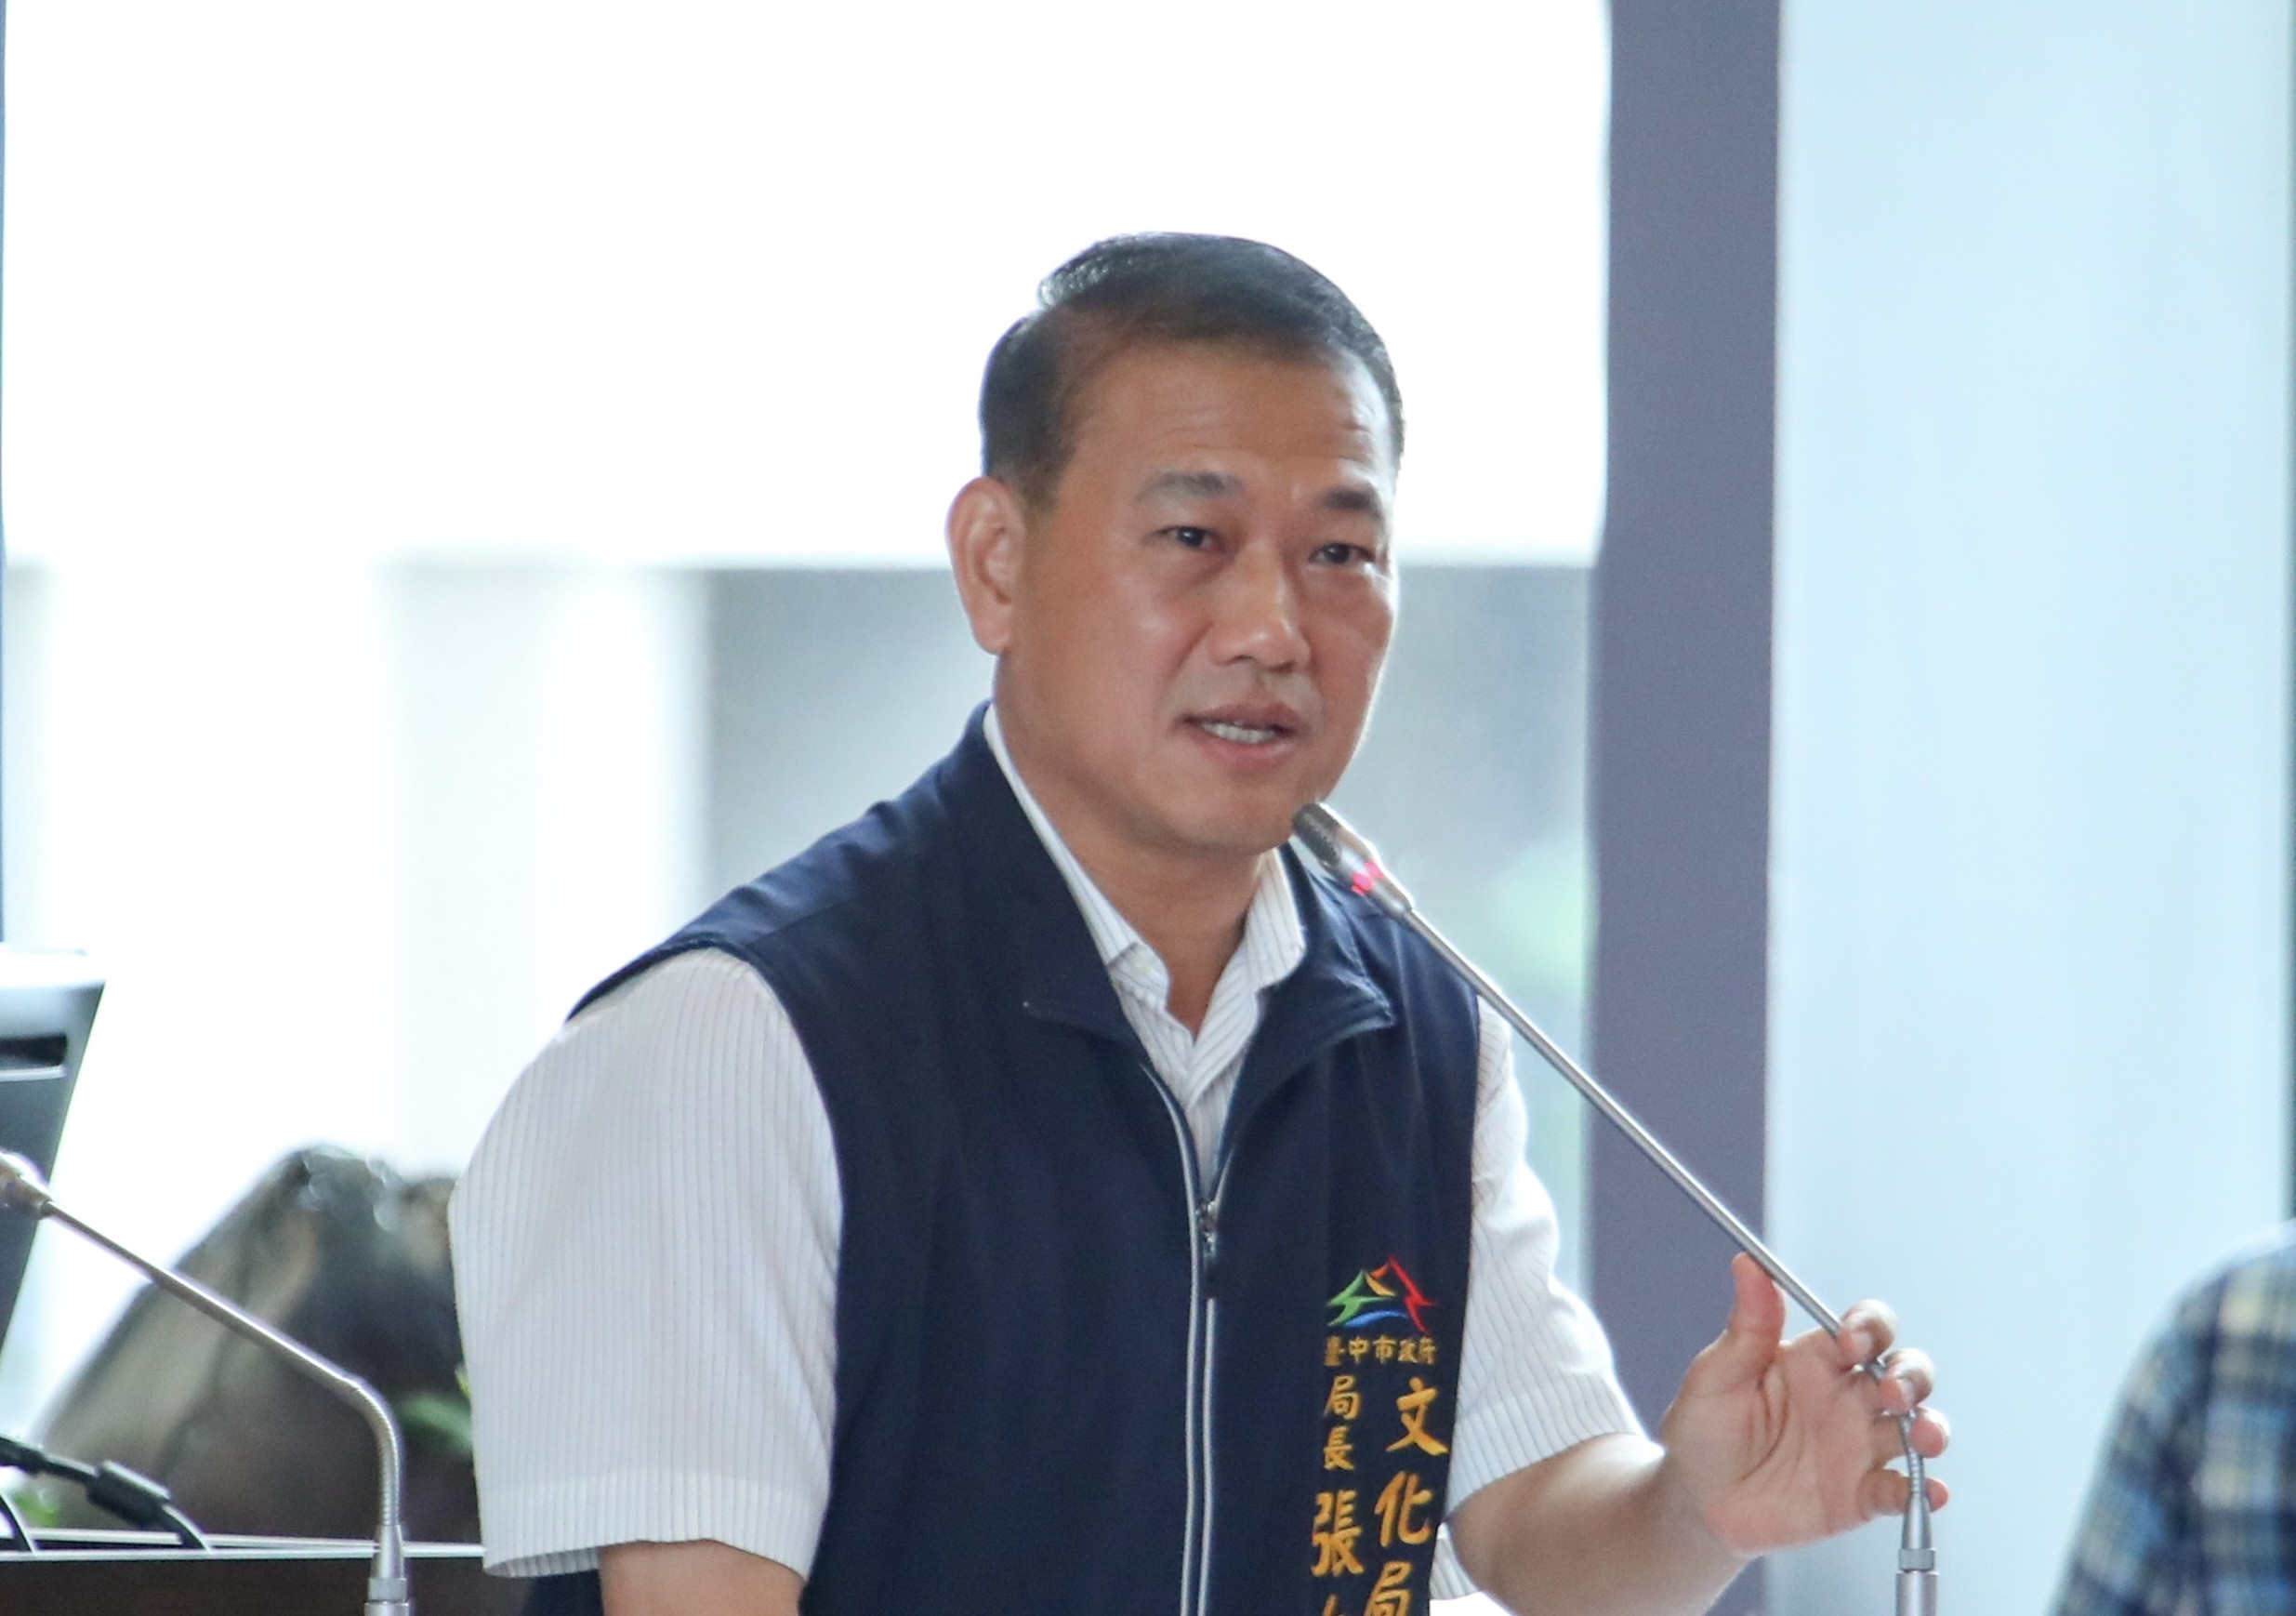 Direktur Biro Ketenagakerjaan, Zhang Da-Chun (張大春) menyatakan bahwa Taichung adalah wilayah dengan jumlah pekerja migran terbanyak kedua di seluruh negeri. Sumber: Biro Ketenagakerjaan Taichung 